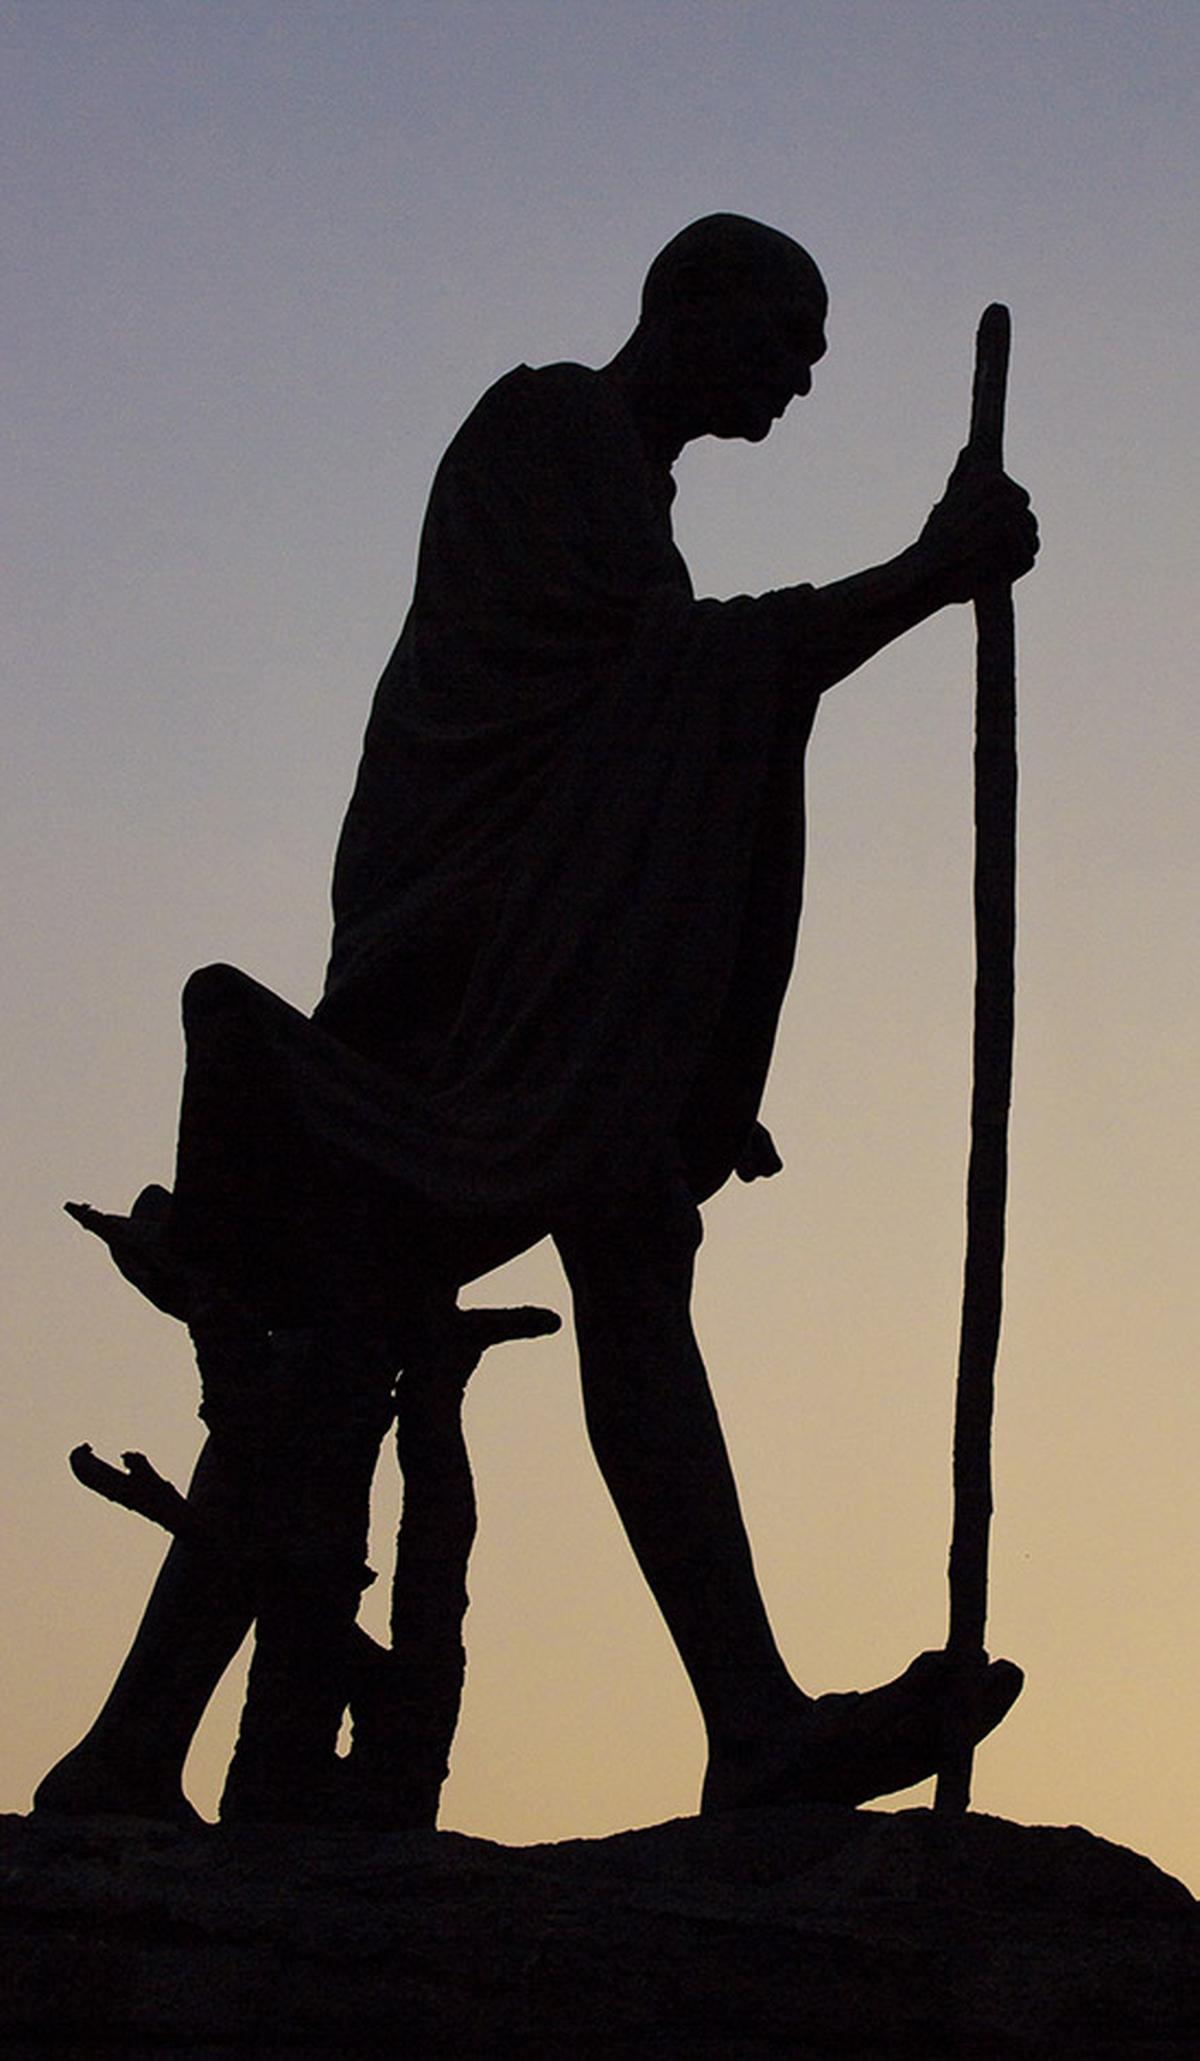 The Mahatma’s dandi march statue